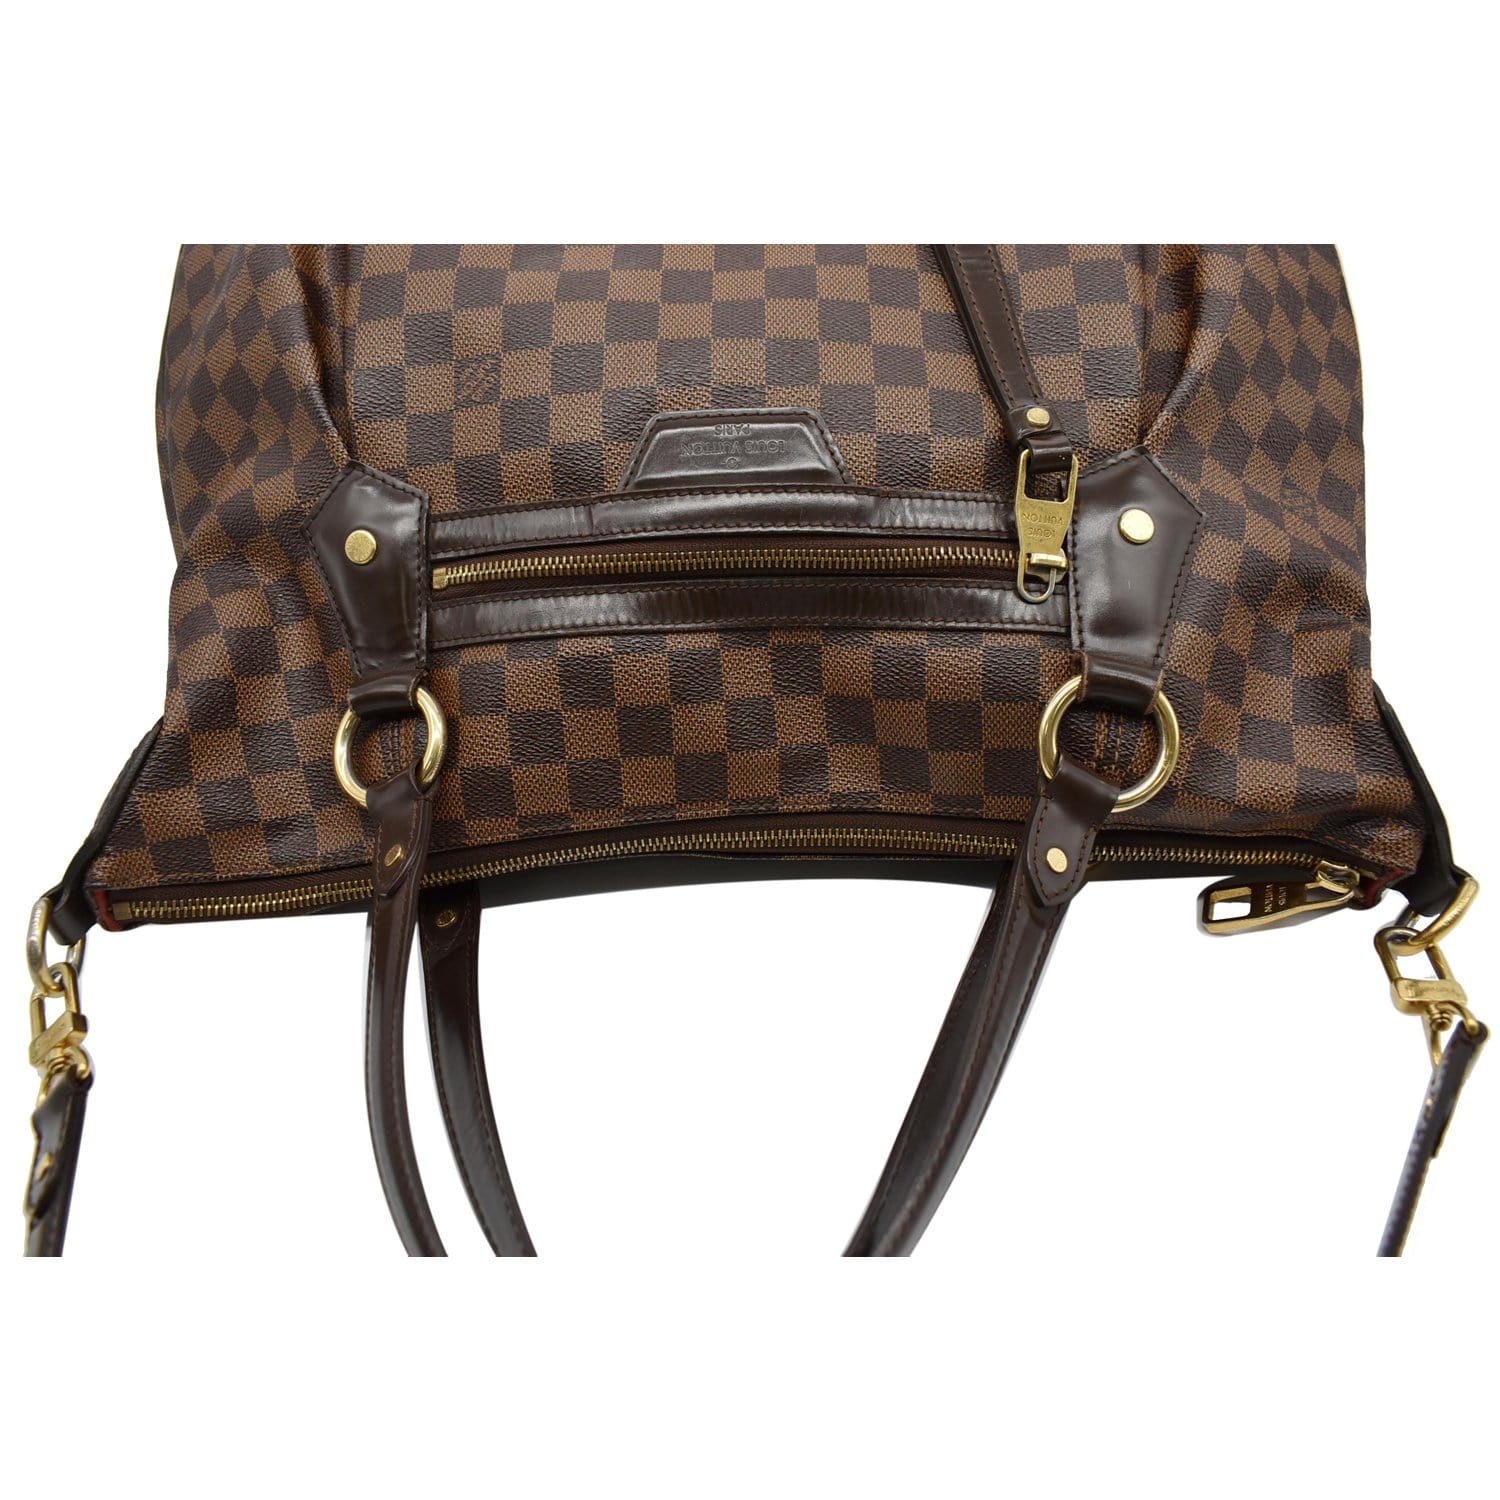 Louis Vuitton Evora Handbag 381852, Extension-fmedShops